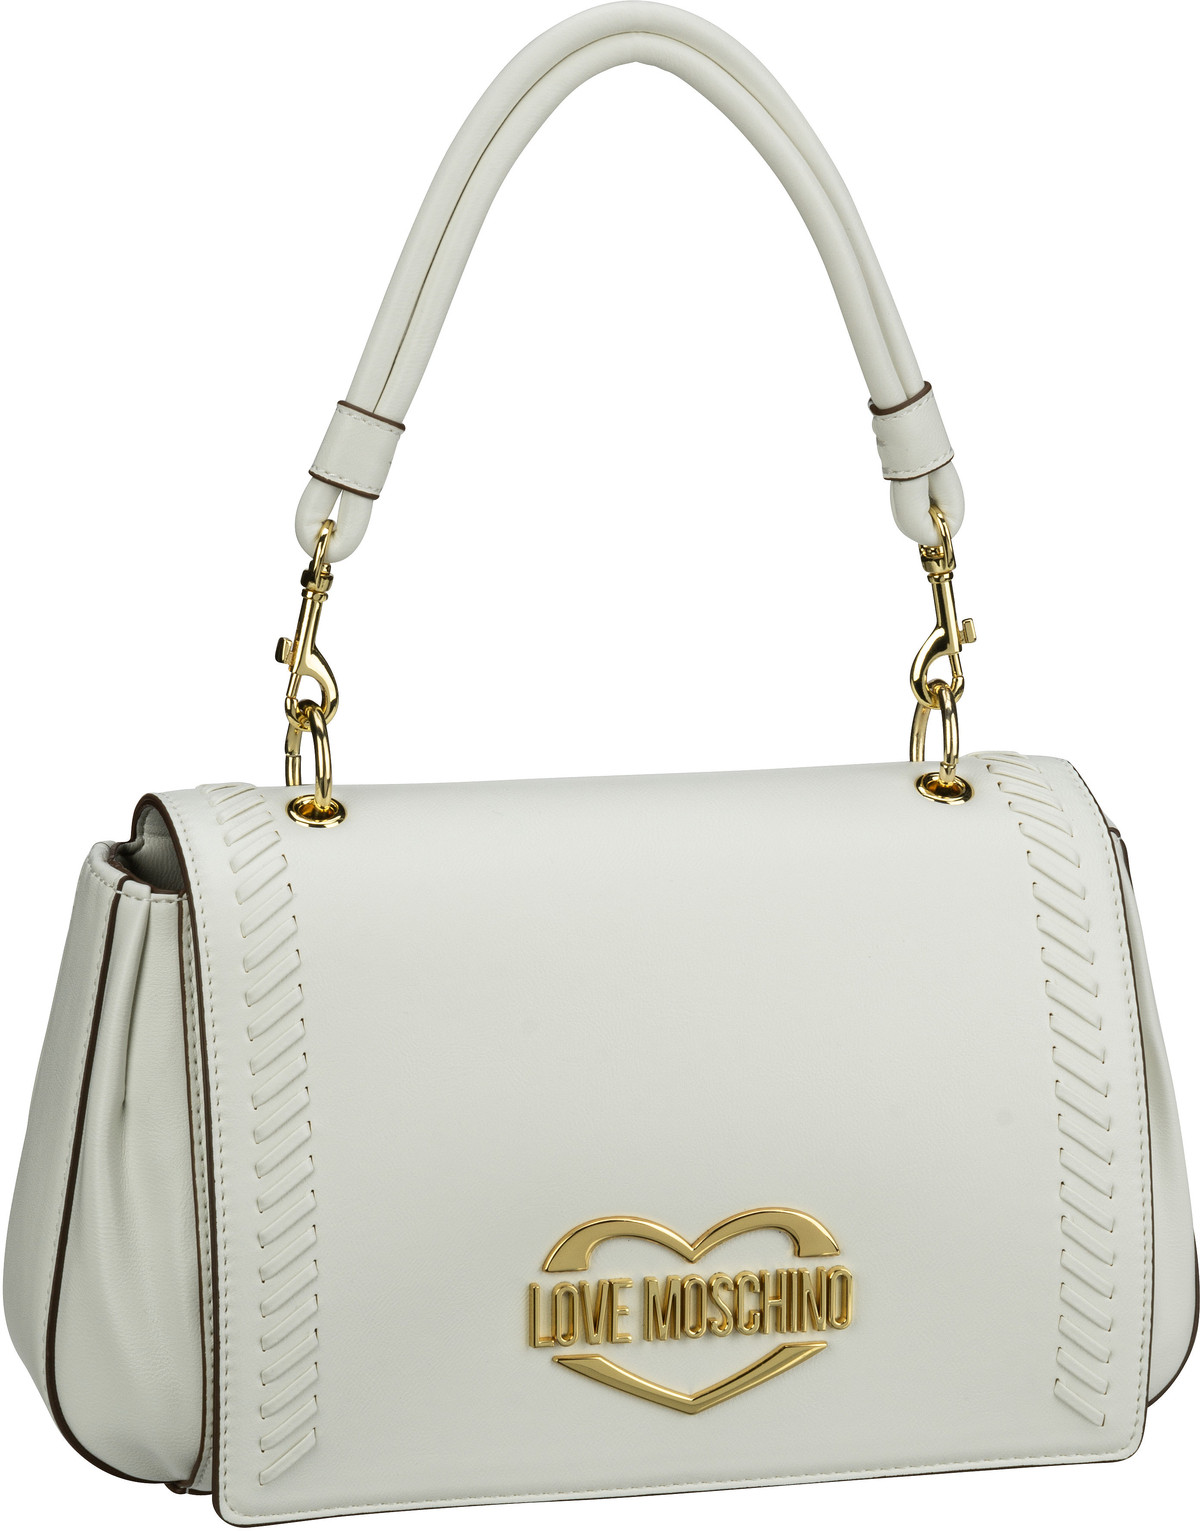 Love Moschino Handtasche Whip Stitch Shoulder Bag 4055 Ivory (3.7 Liter)  - Onlineshop Taschenkaufhaus